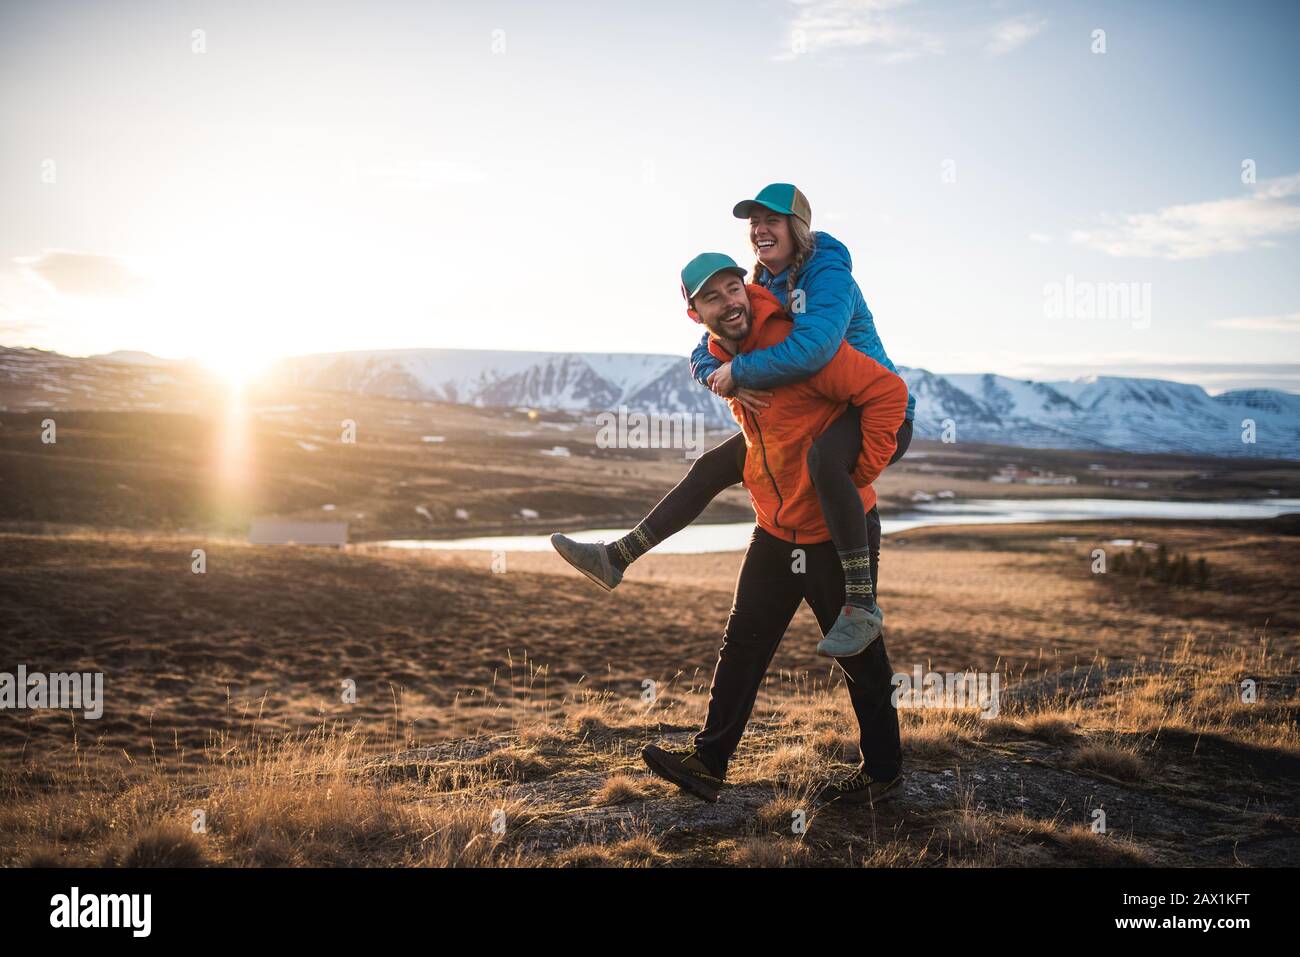 Uomo che porta donna su piggyback in campo con montagne sullo sfondo Foto Stock